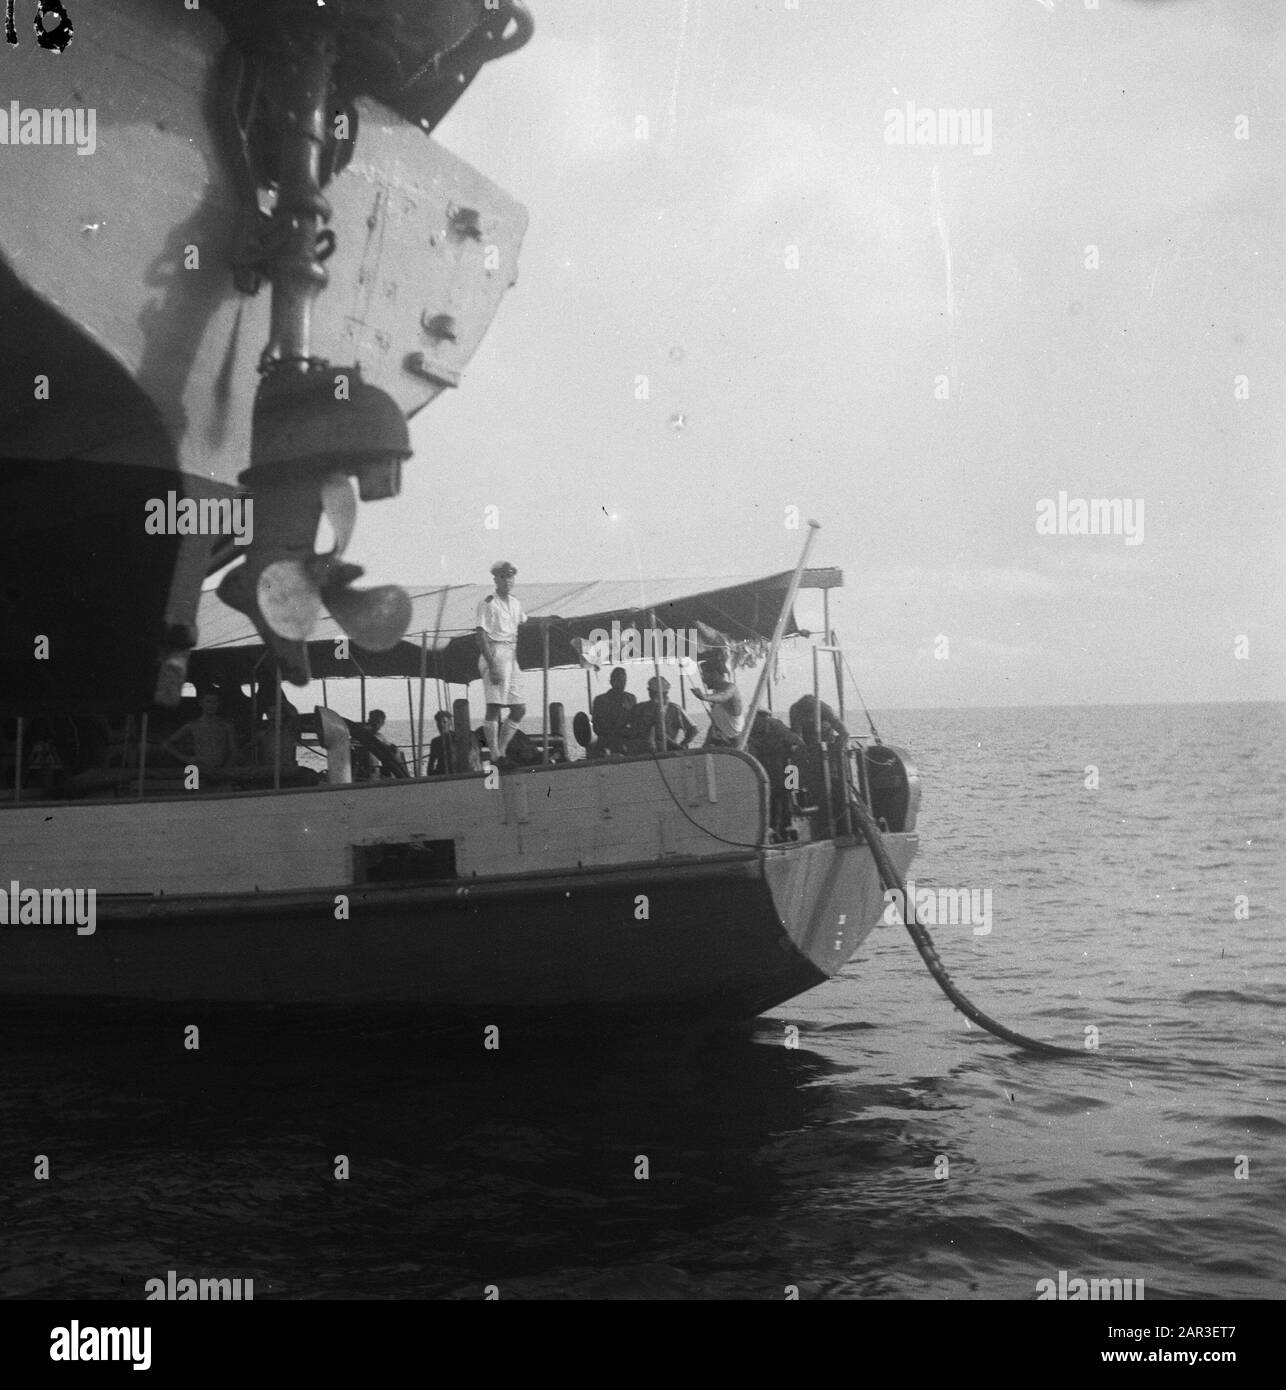 Reportage Hollandia [Telefonkabel auf See verlegt. Die Rückseite des Schiffes] Datum: Februar 1947 Ort: Indonesien, Niederländisch-Ostindien Stockfoto